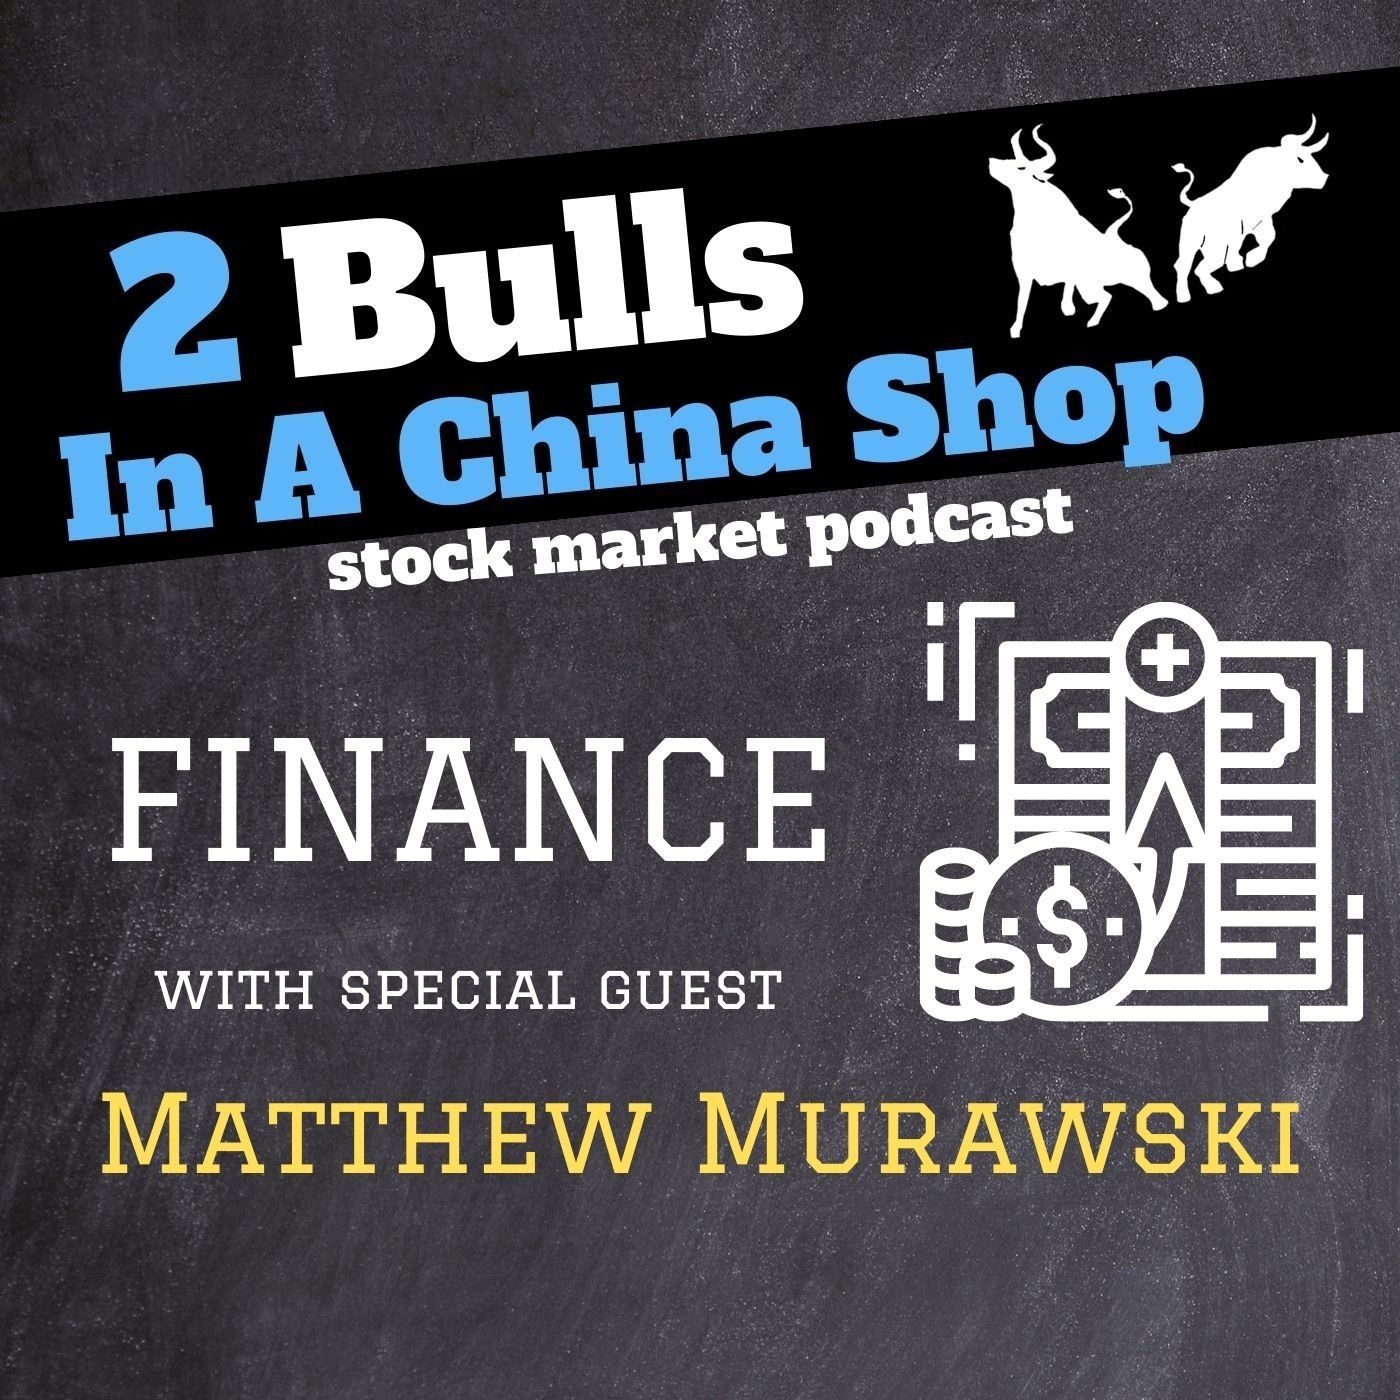 Matthew Murawski: Financial Planner at Goodstein Wealth Management